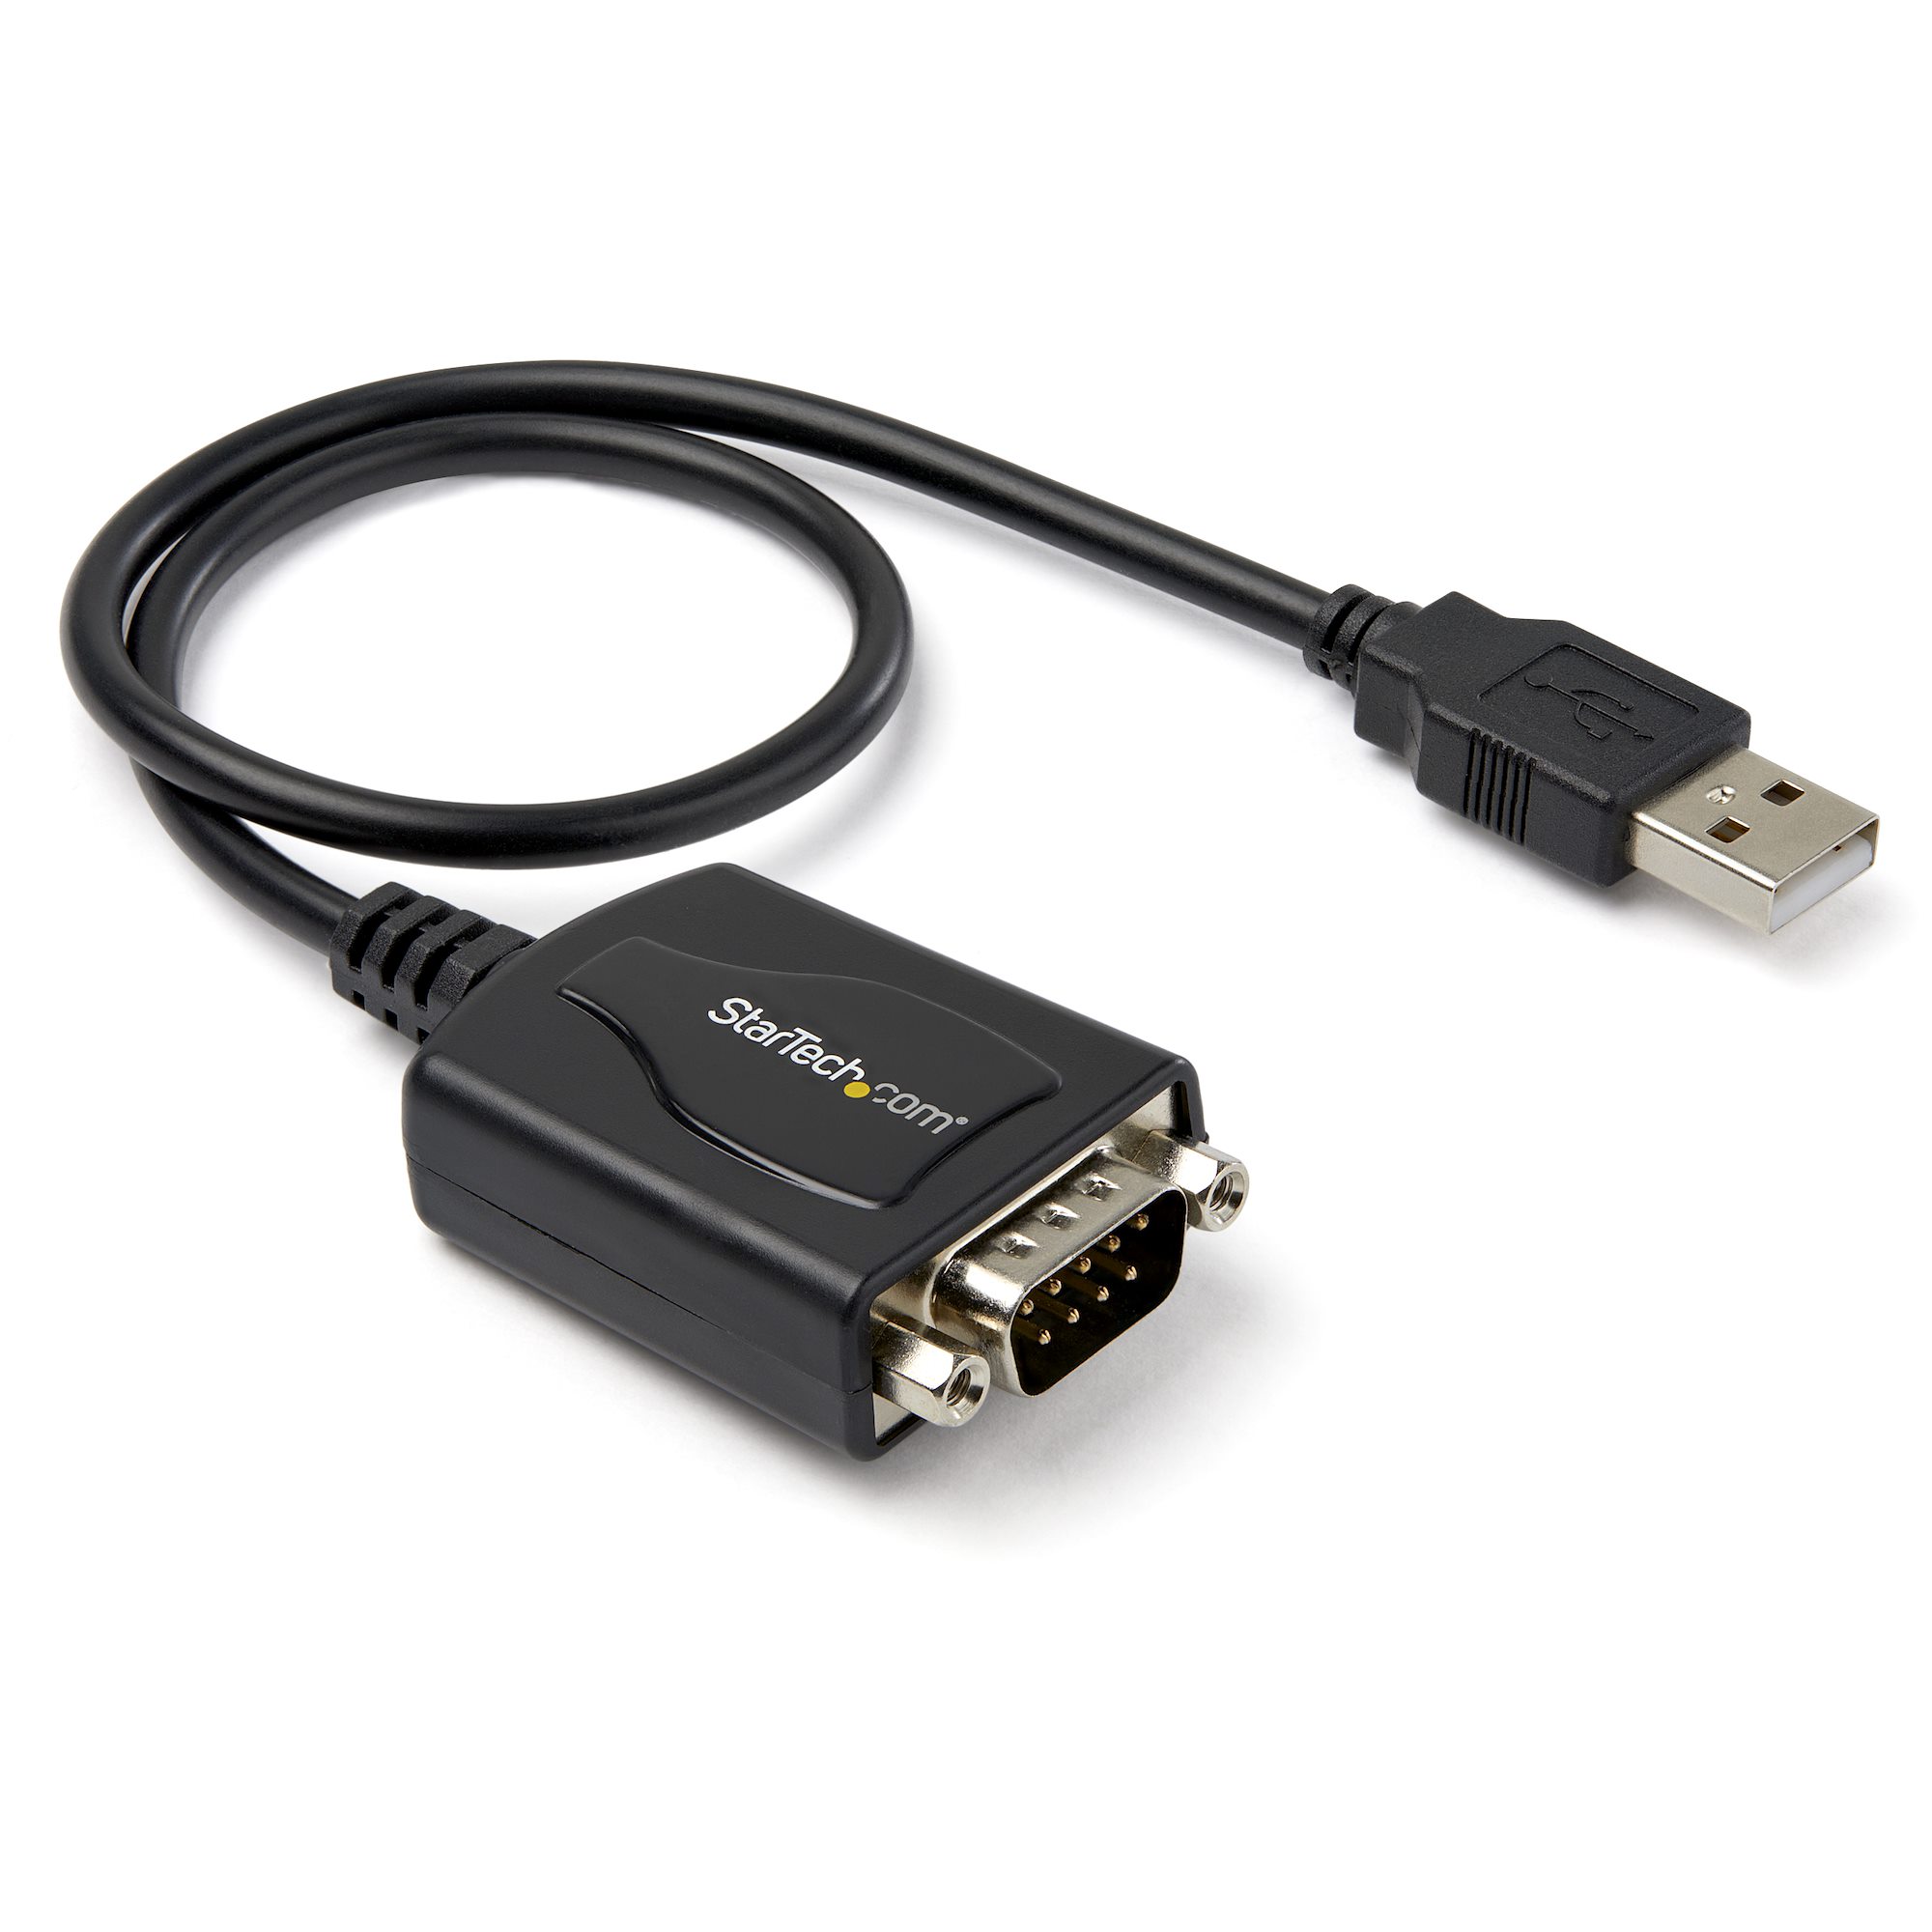 USB 8ポートシリアルRS232C変換ハブ 8x シリアルD-Sub 9ピンハブ デイジーチェーン機能 ラッ 通販 